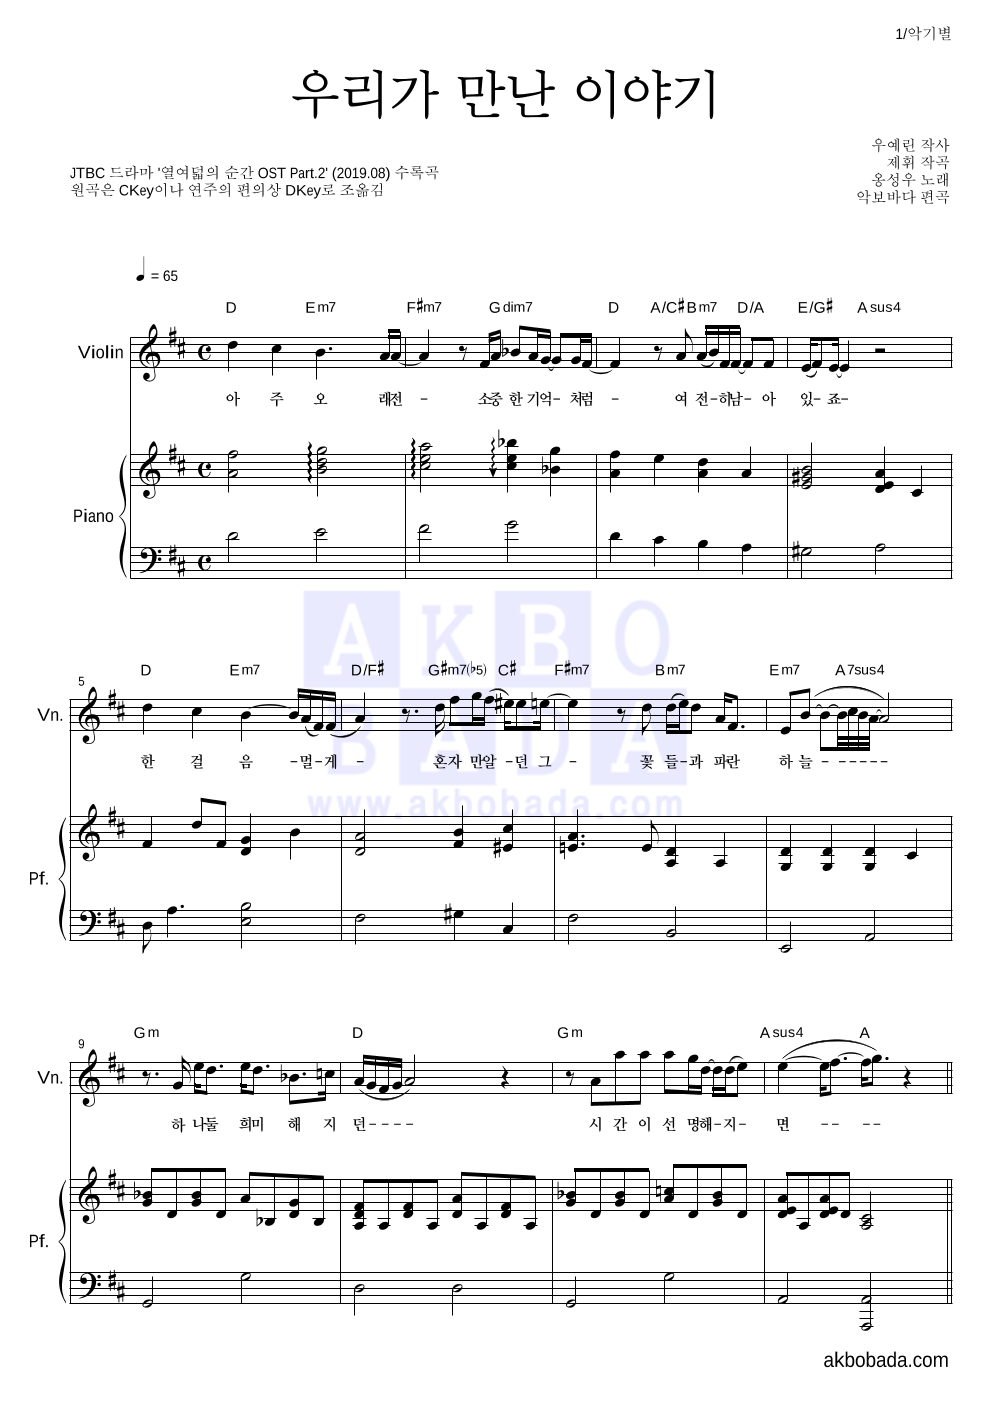 옹성우 - 우리가 만난 이야기 바이올린&피아노 악보 